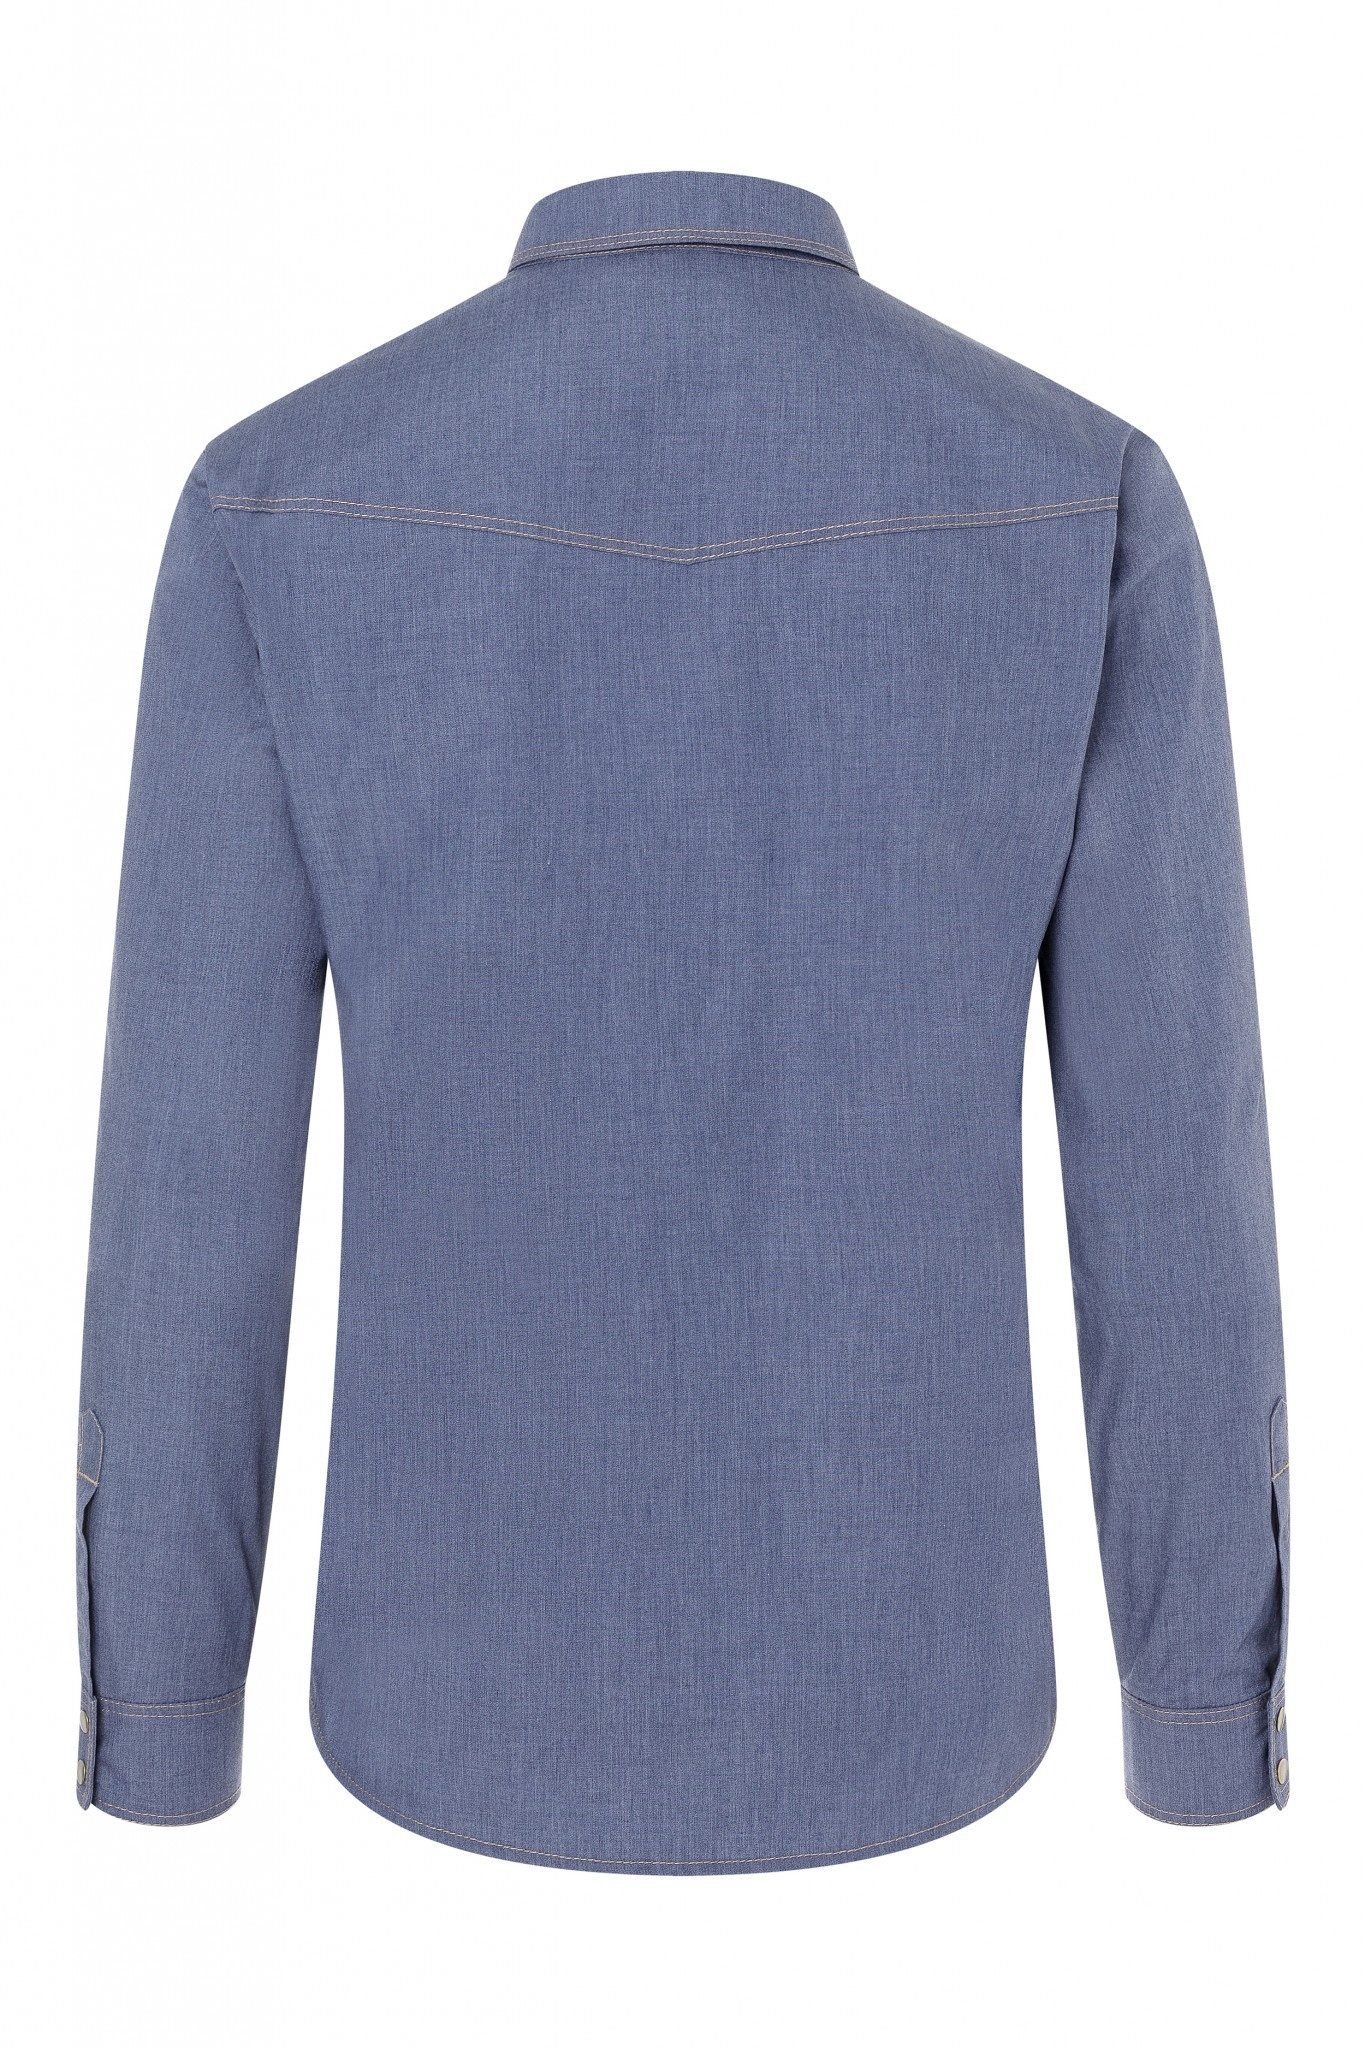 Kochhemd Jeans-Style | Vintage Blue | 65% Polyester / 35% Baumwolle | Erhältlich in 10 Größen